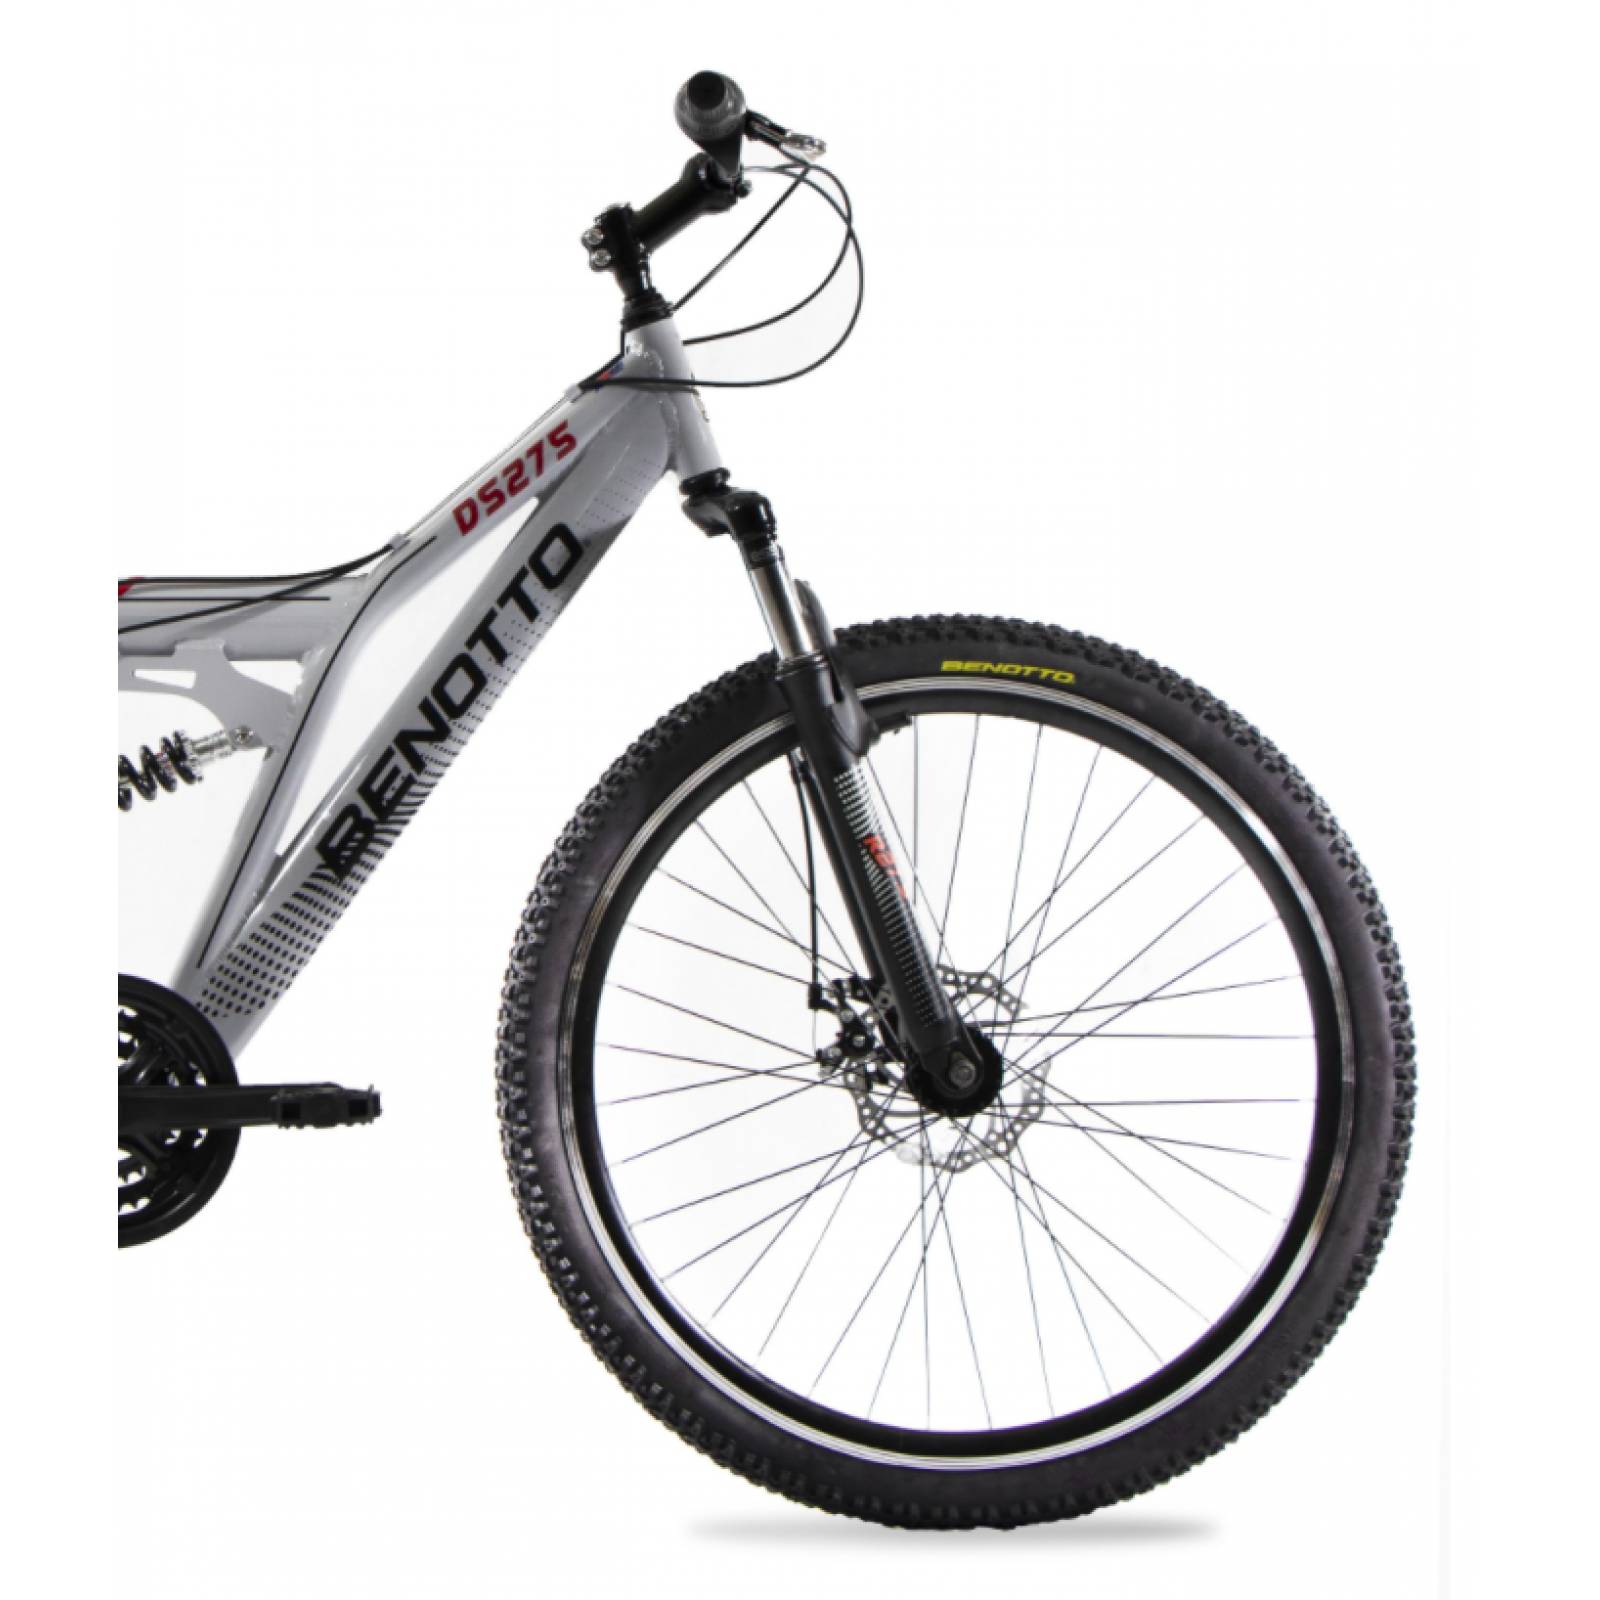 BIKESTAR Bicicleta de montaña de Aluminio Suspensión Doble